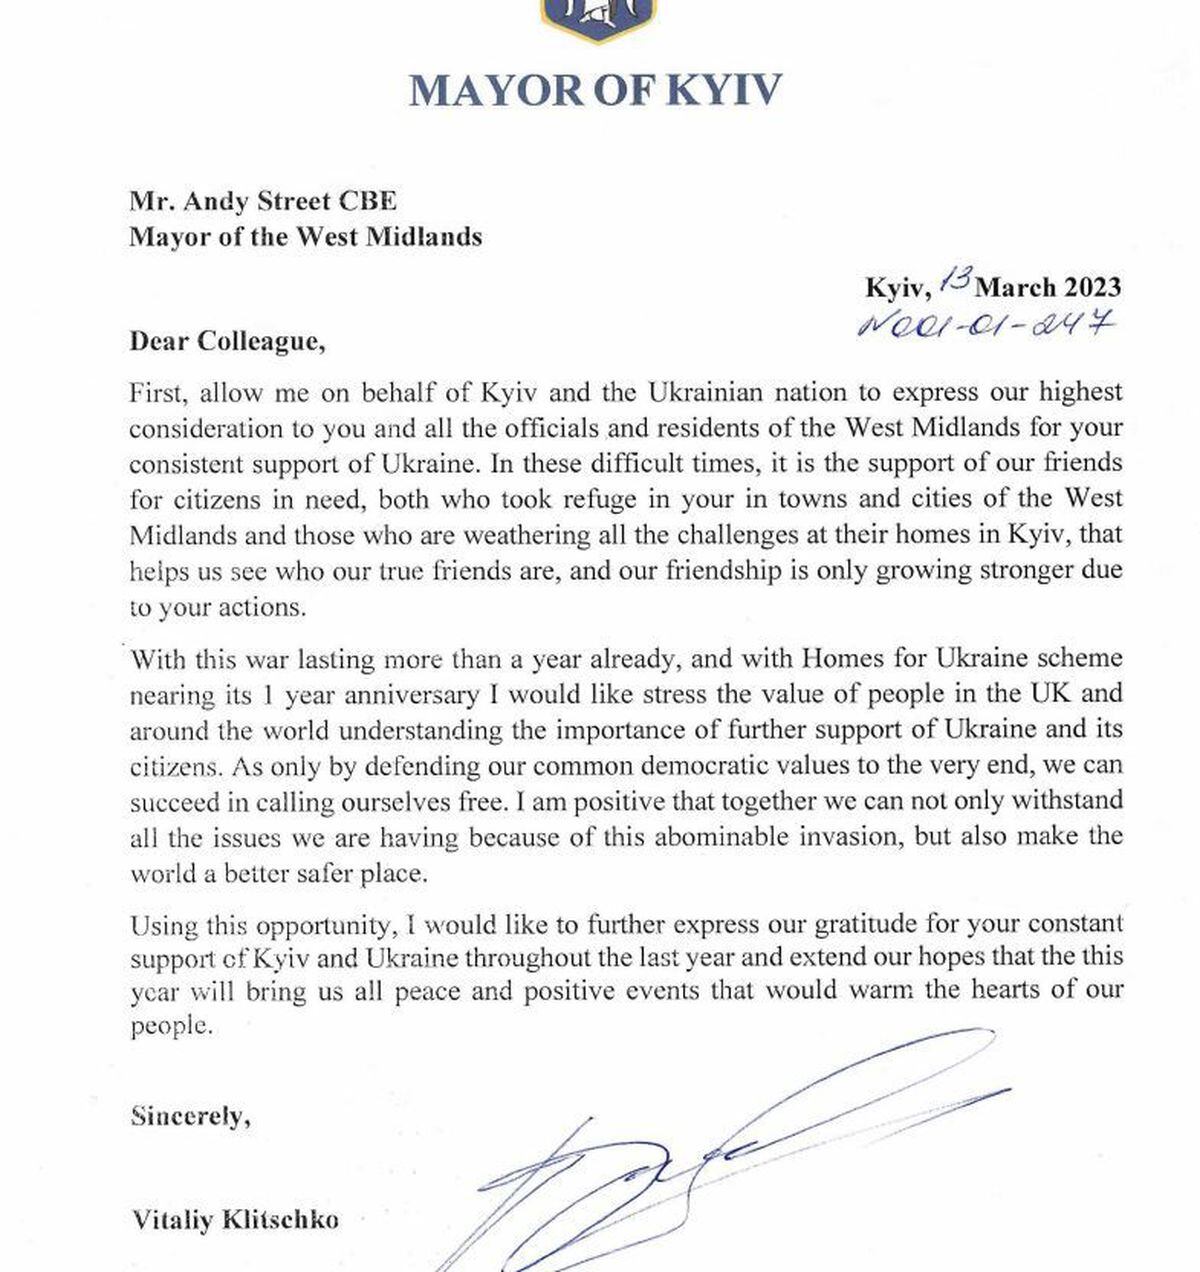 The letter from Vitali Klitschko